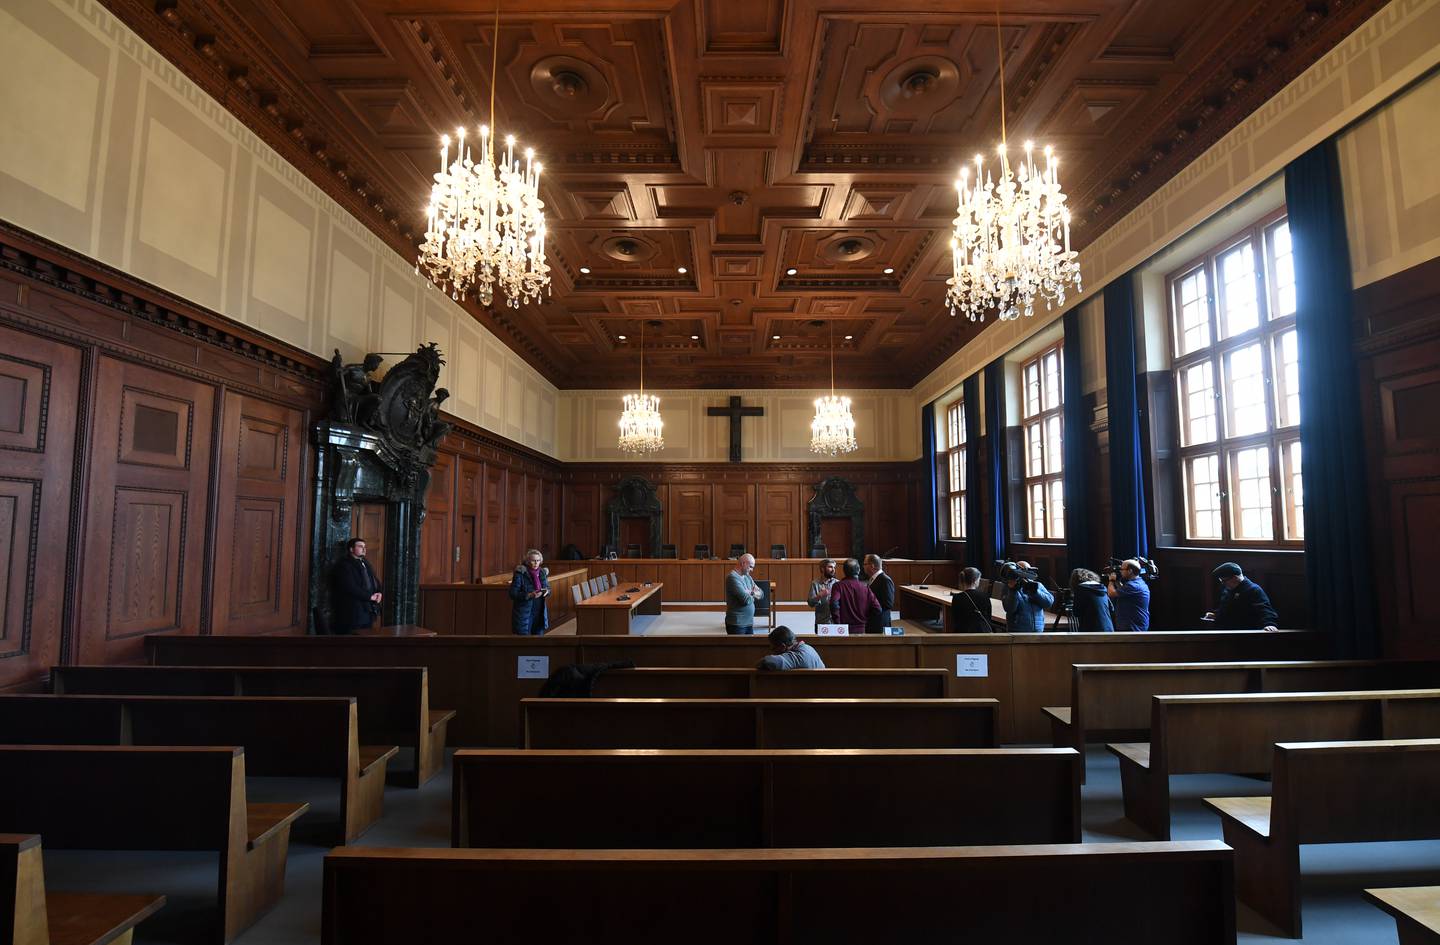 La sala donde se llevaron a cabo los Juicios de Núremberg.